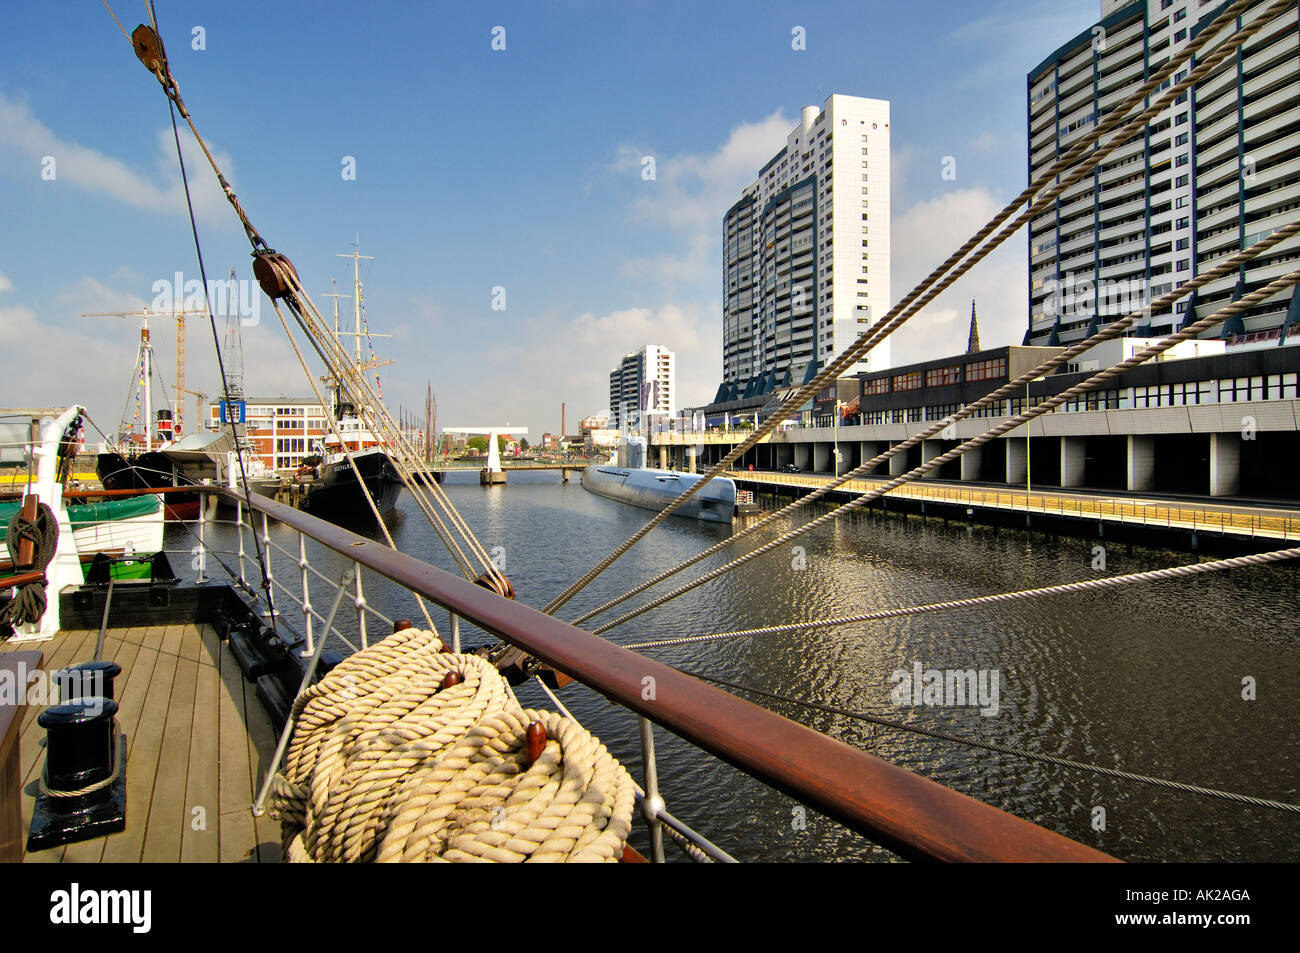 Auf einem Segelschiff, u-Boot in den Hintergrund, Bremerhaven, Bremen, Deutschland Stockfoto